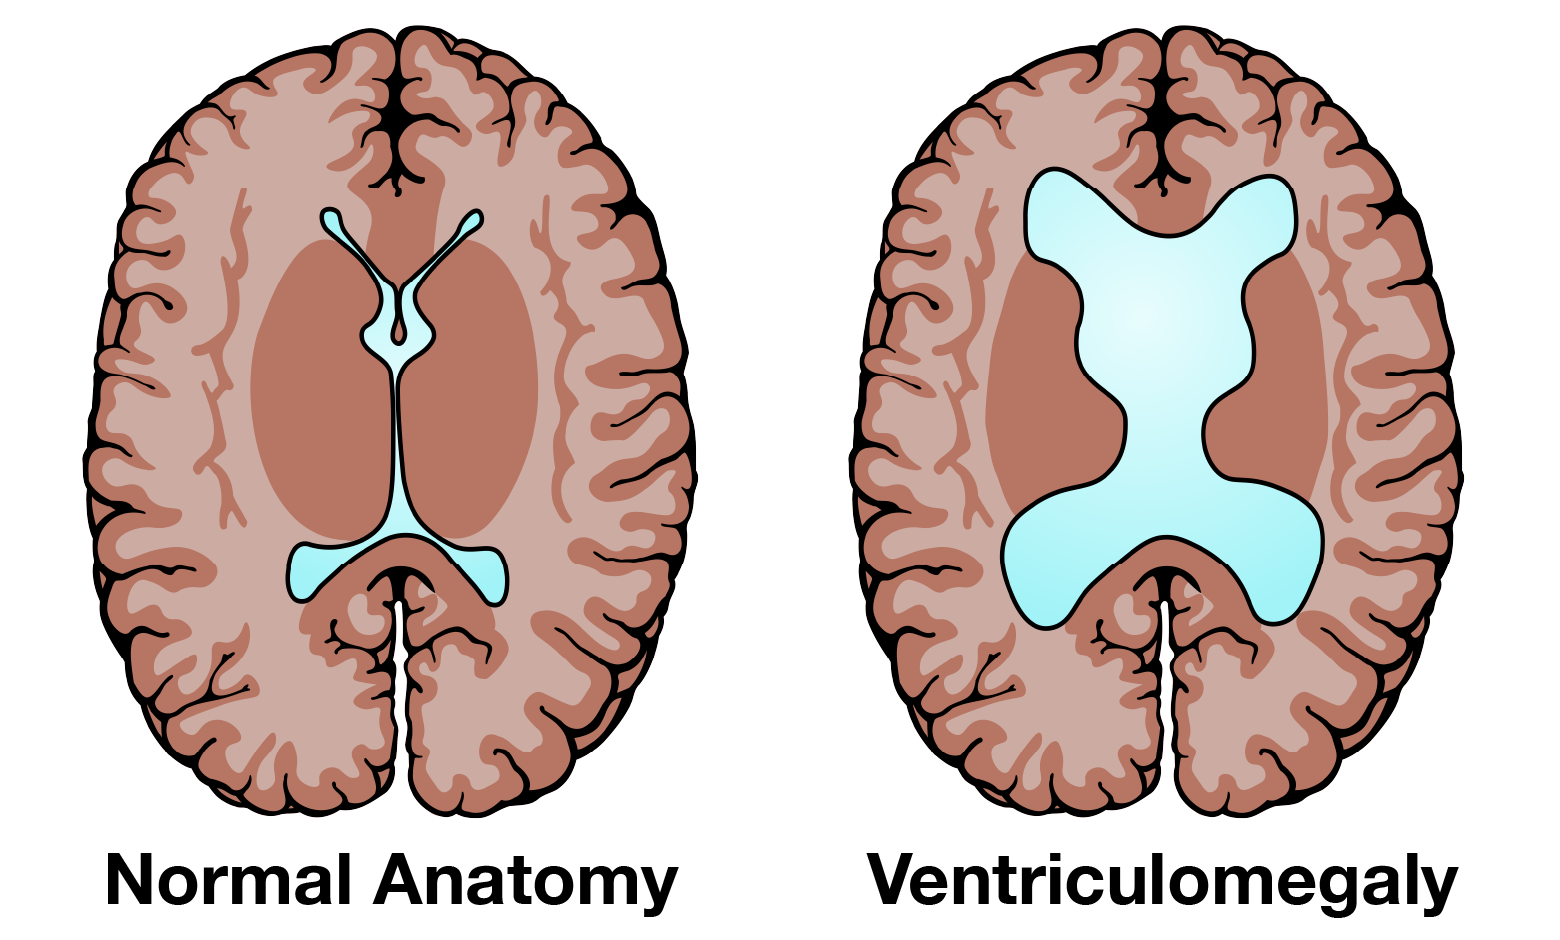 الخرف الناتج عن استسقاء الرأس الطبيعي حيث تظهر الصورتضخم لقنوات وحجرات السائل الدماغي الشوكي داخل الدماغ ( اليمين ) ومقارنته مع الحجم الطبيعي ( اليسار )